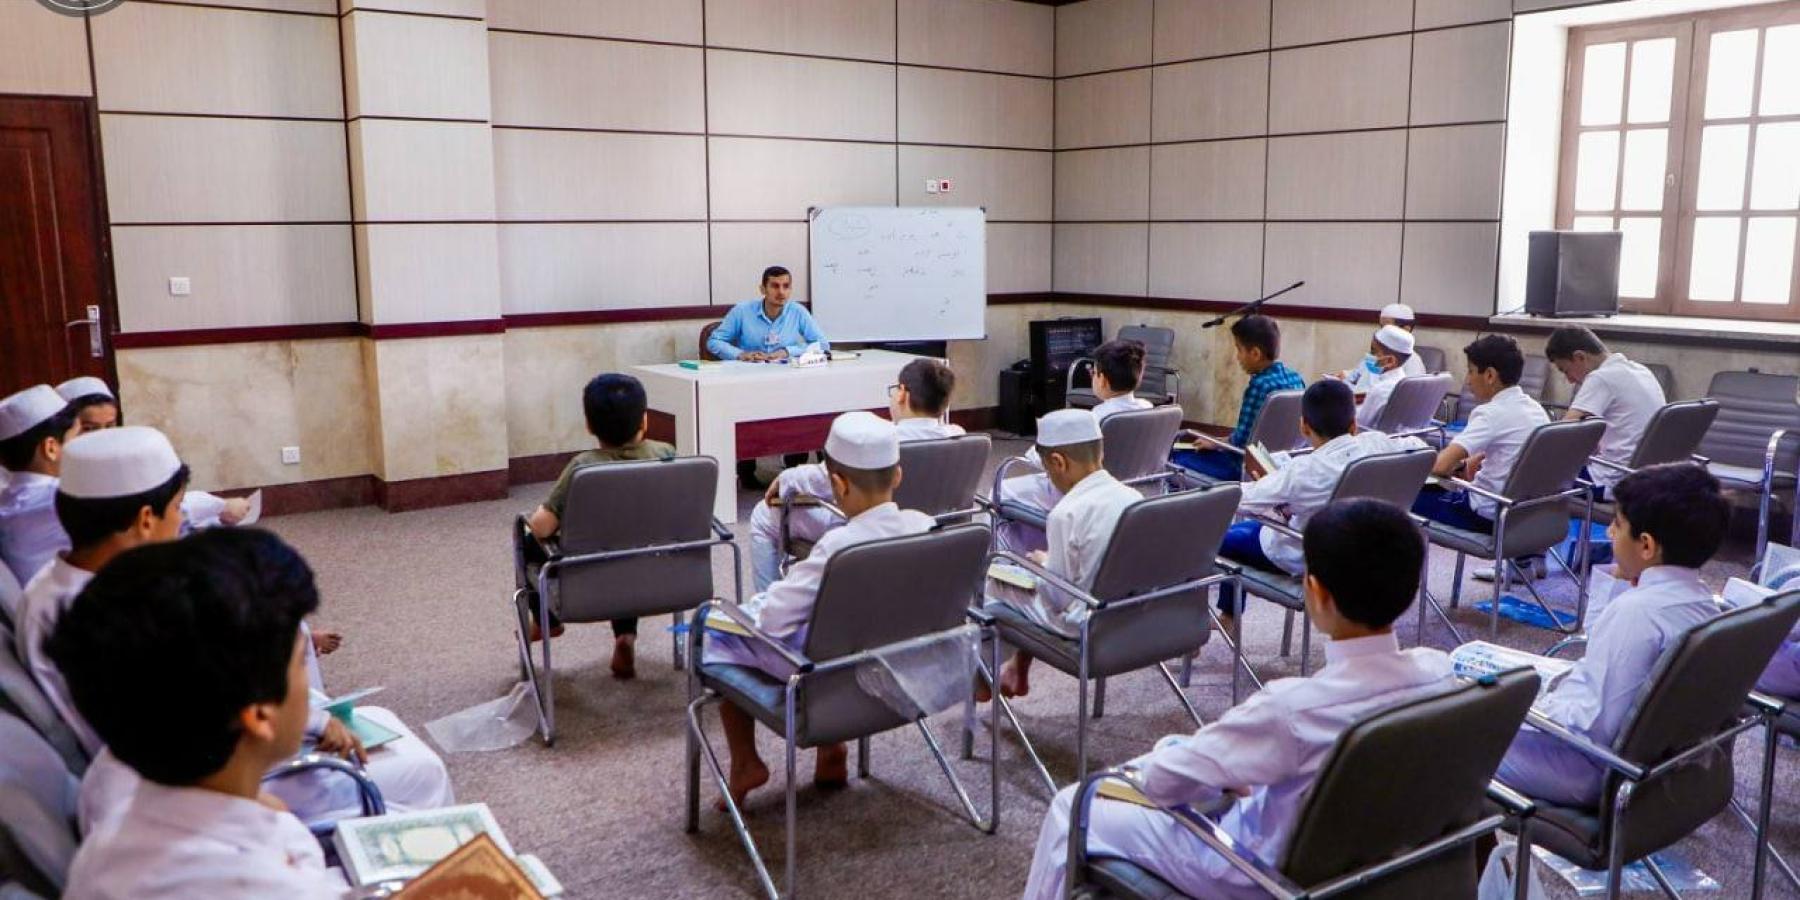 ضمن برامج العطلة الصيفية دار القرآن الكريم تقيم دورة للفتية ورعاية المواهب